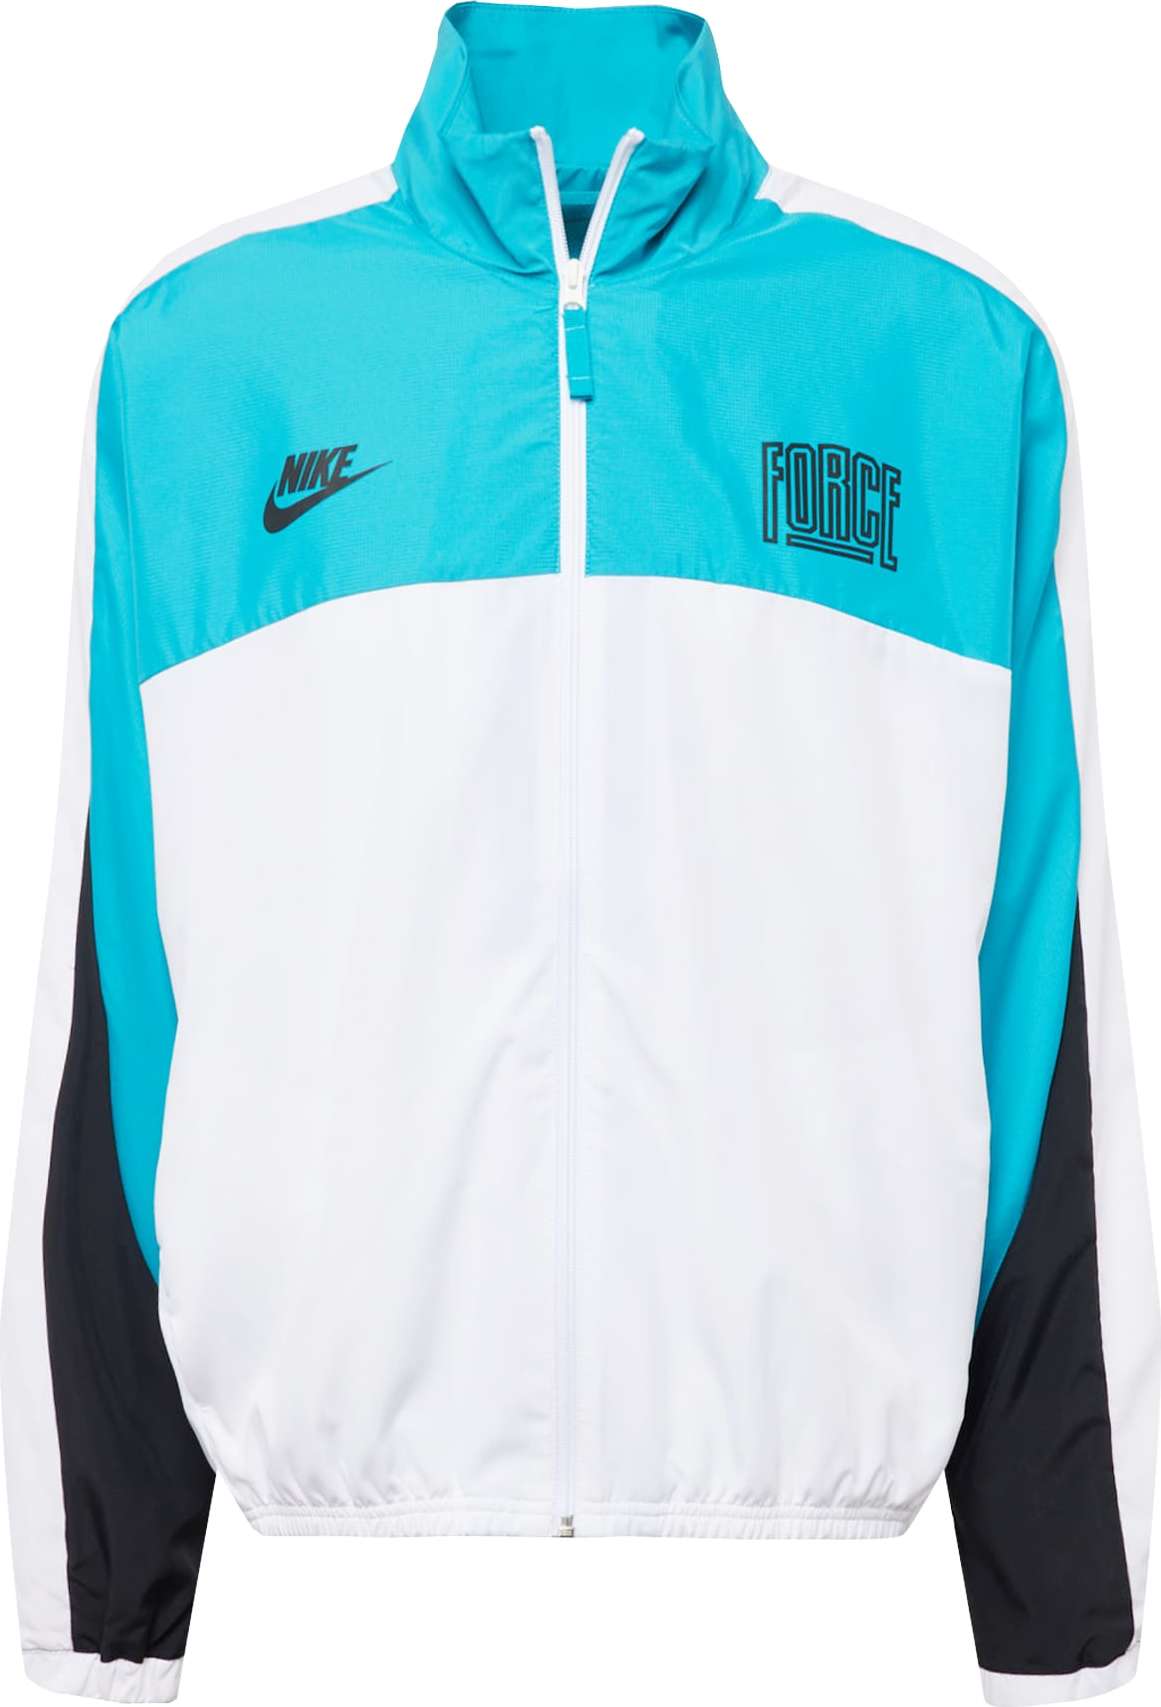 Sportovní bunda 'START 5' Nike azurová modrá / černá / bílá